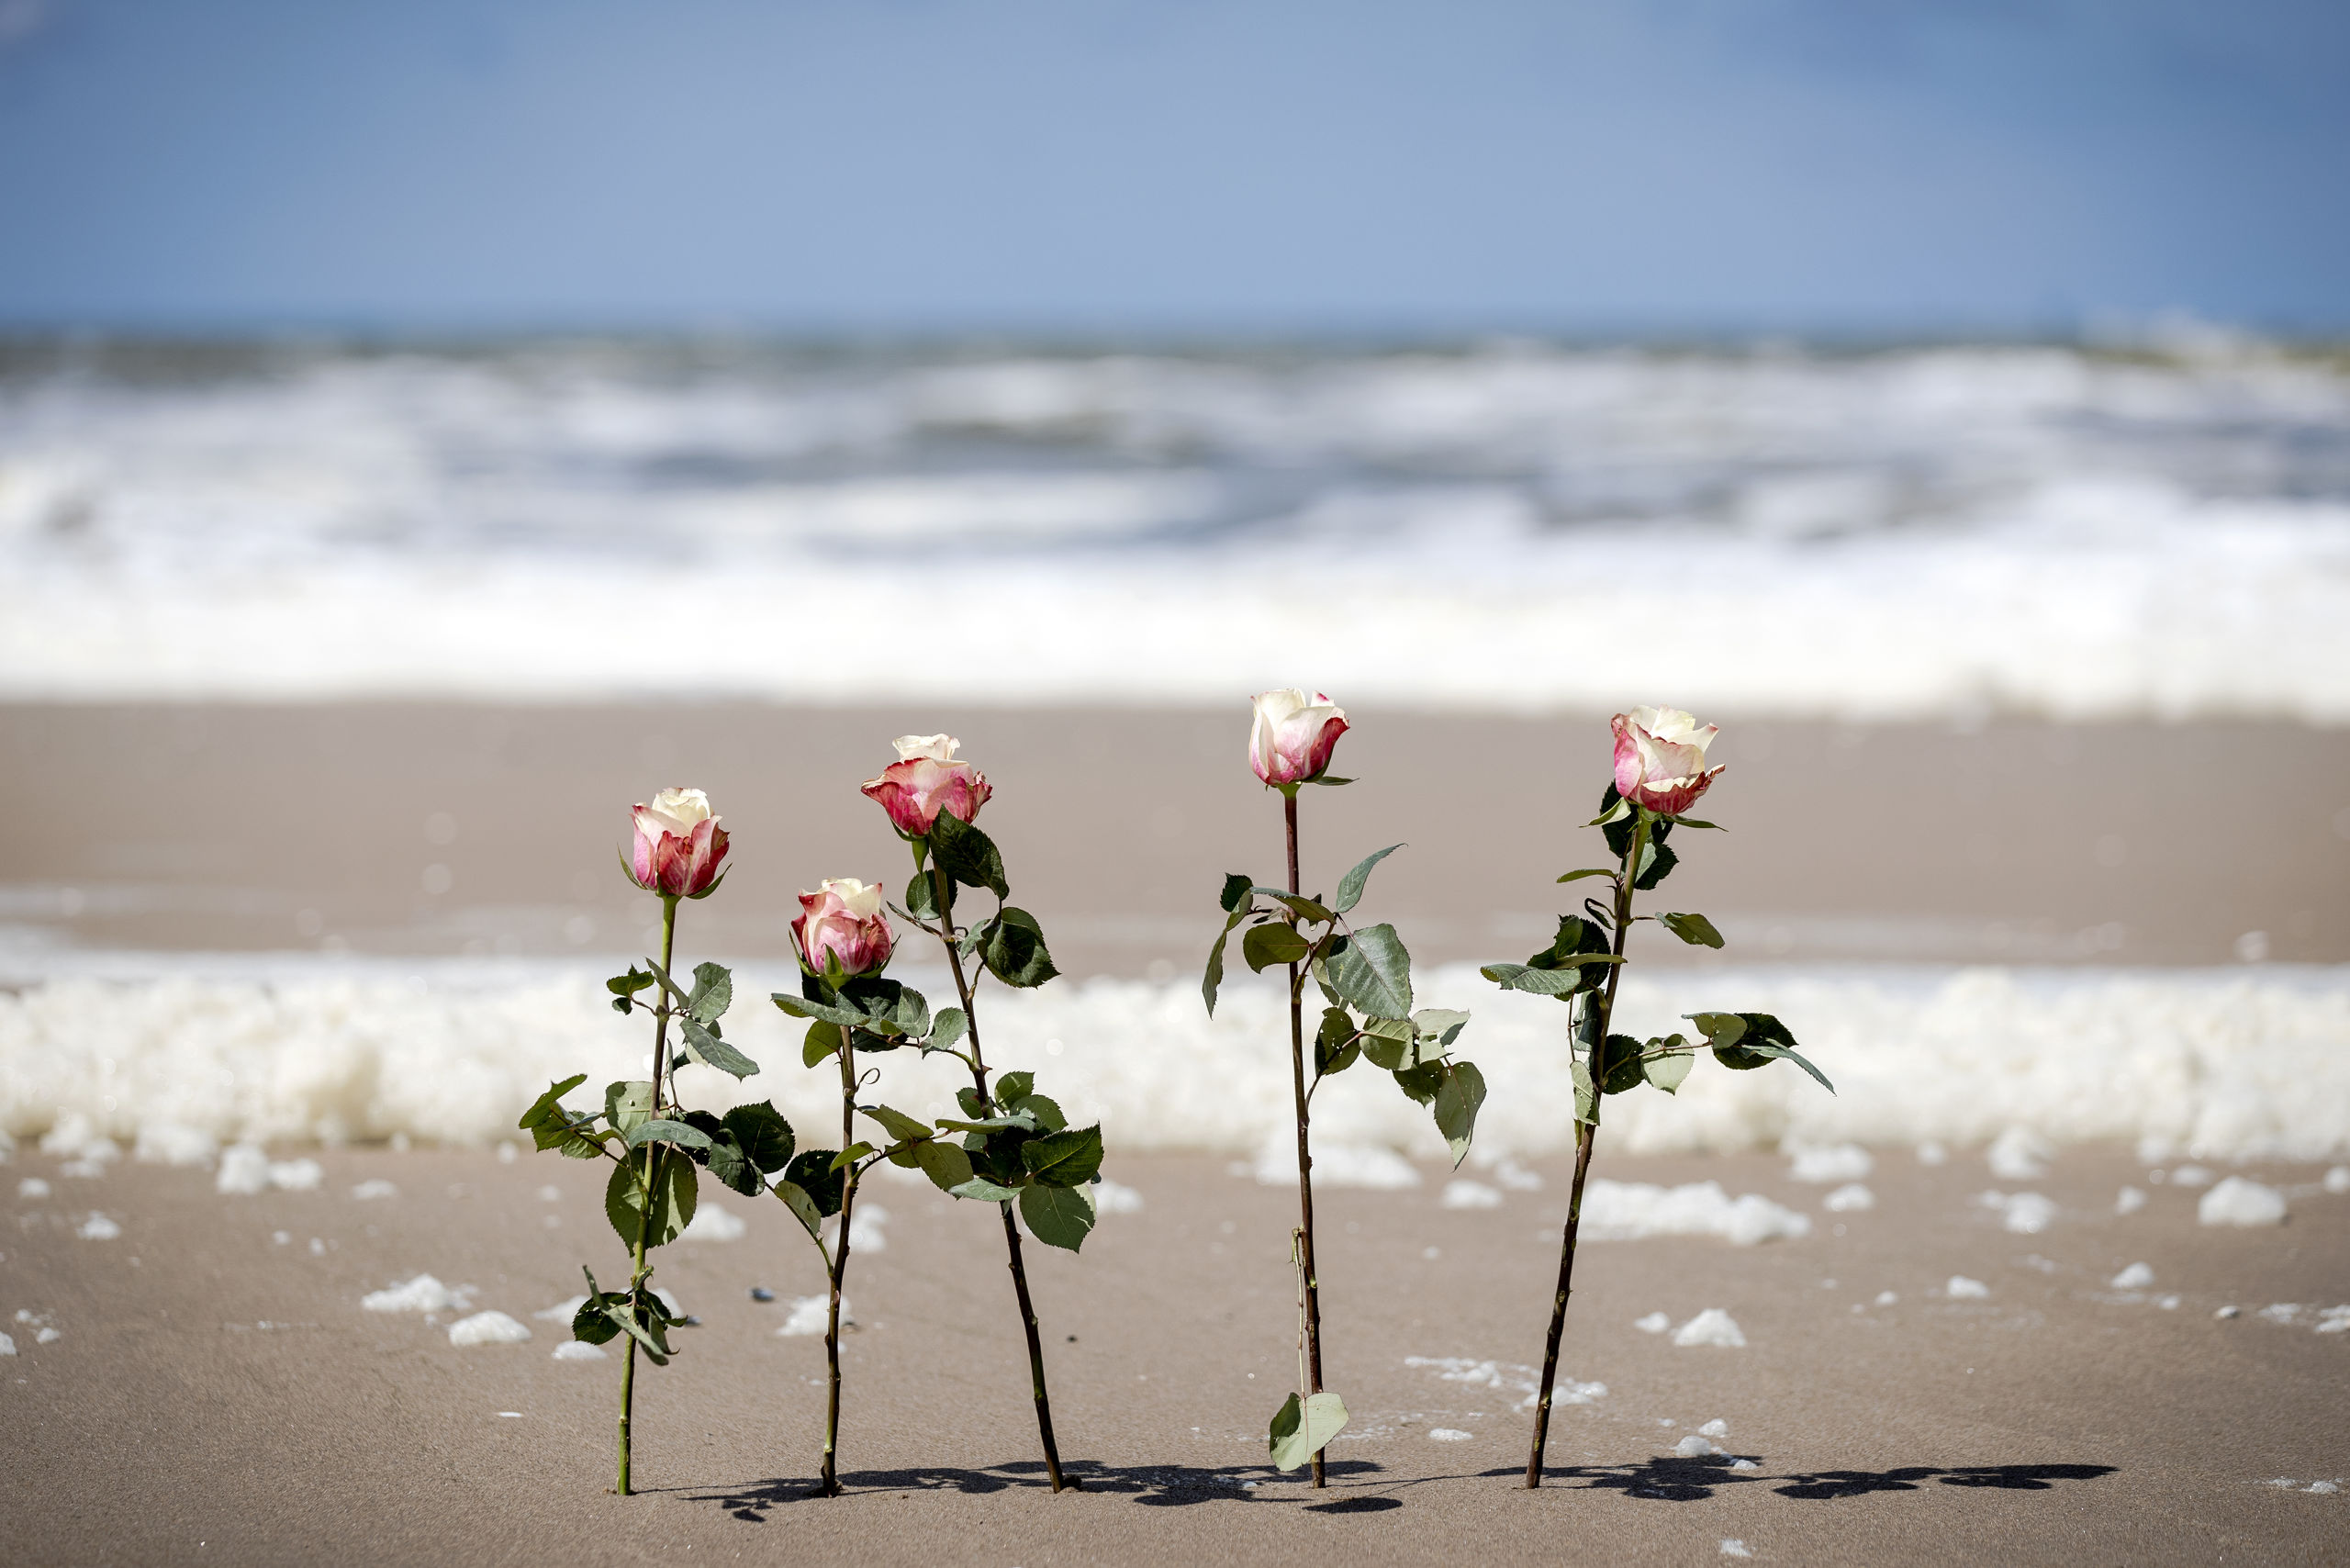 Bloemen tussen het schuim op het strand van Scheveningen. De badplaats is in rouw. Slecht weer heeft vijf surfers het leven gekost. ANP SEM VAN DER WAL